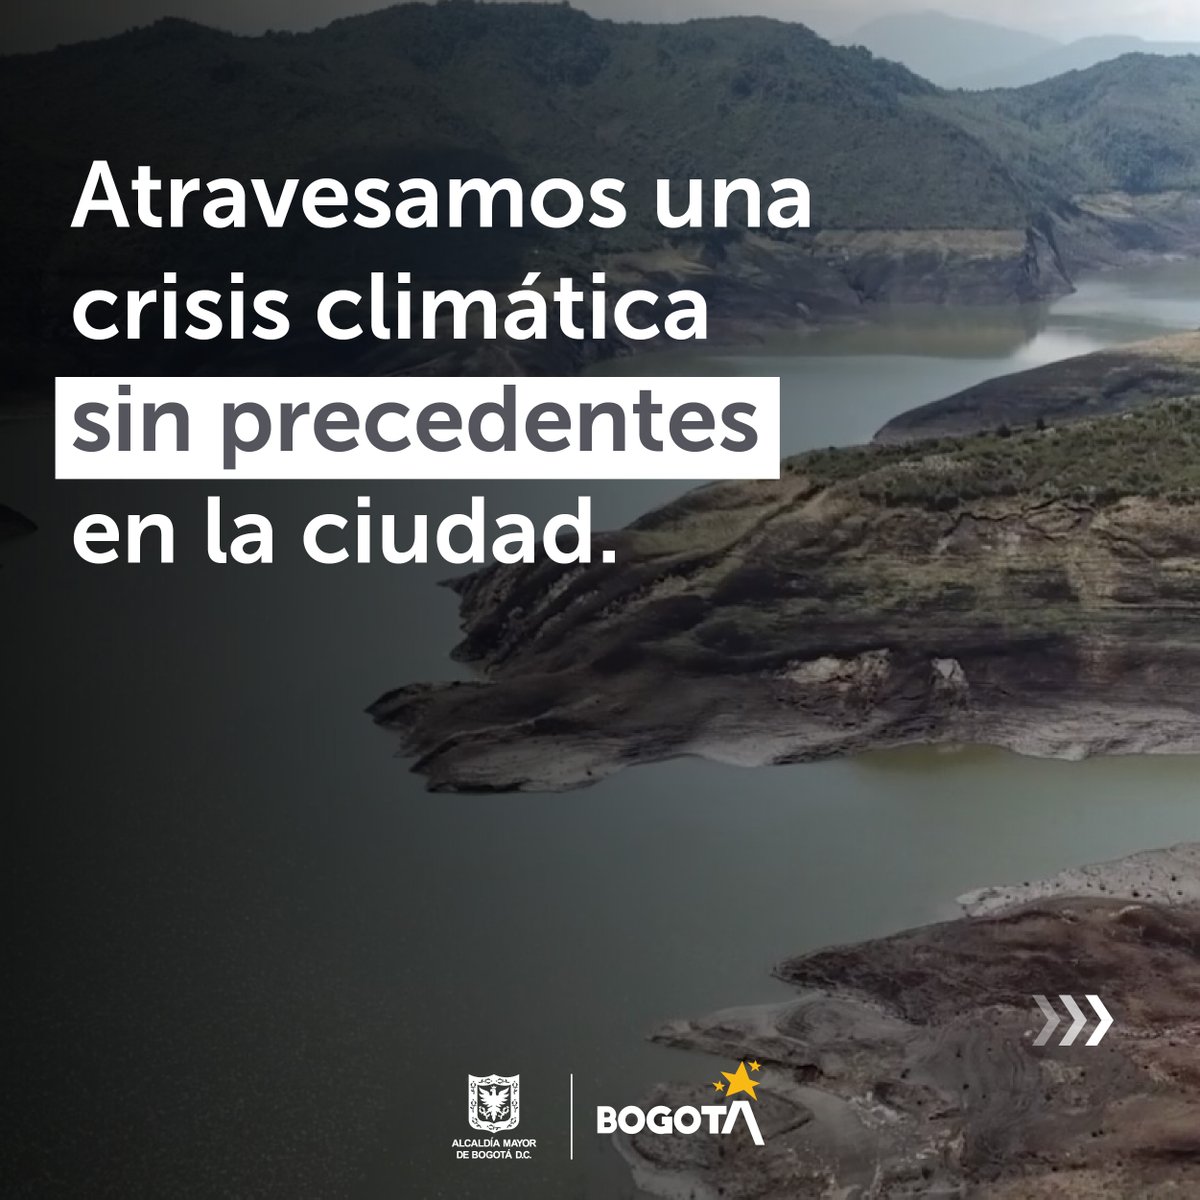 🚨¡Los embalses que suministran agua a Bogotá están en los niveles más críticos de las últimas dos décadas! #JuntosPorElAgua y su cuidado⬇️ 💧Dúchate máximo en 5 minutos 💧Usa la lavadora con la carga completa 💧No laves tu carro o moto con manguera